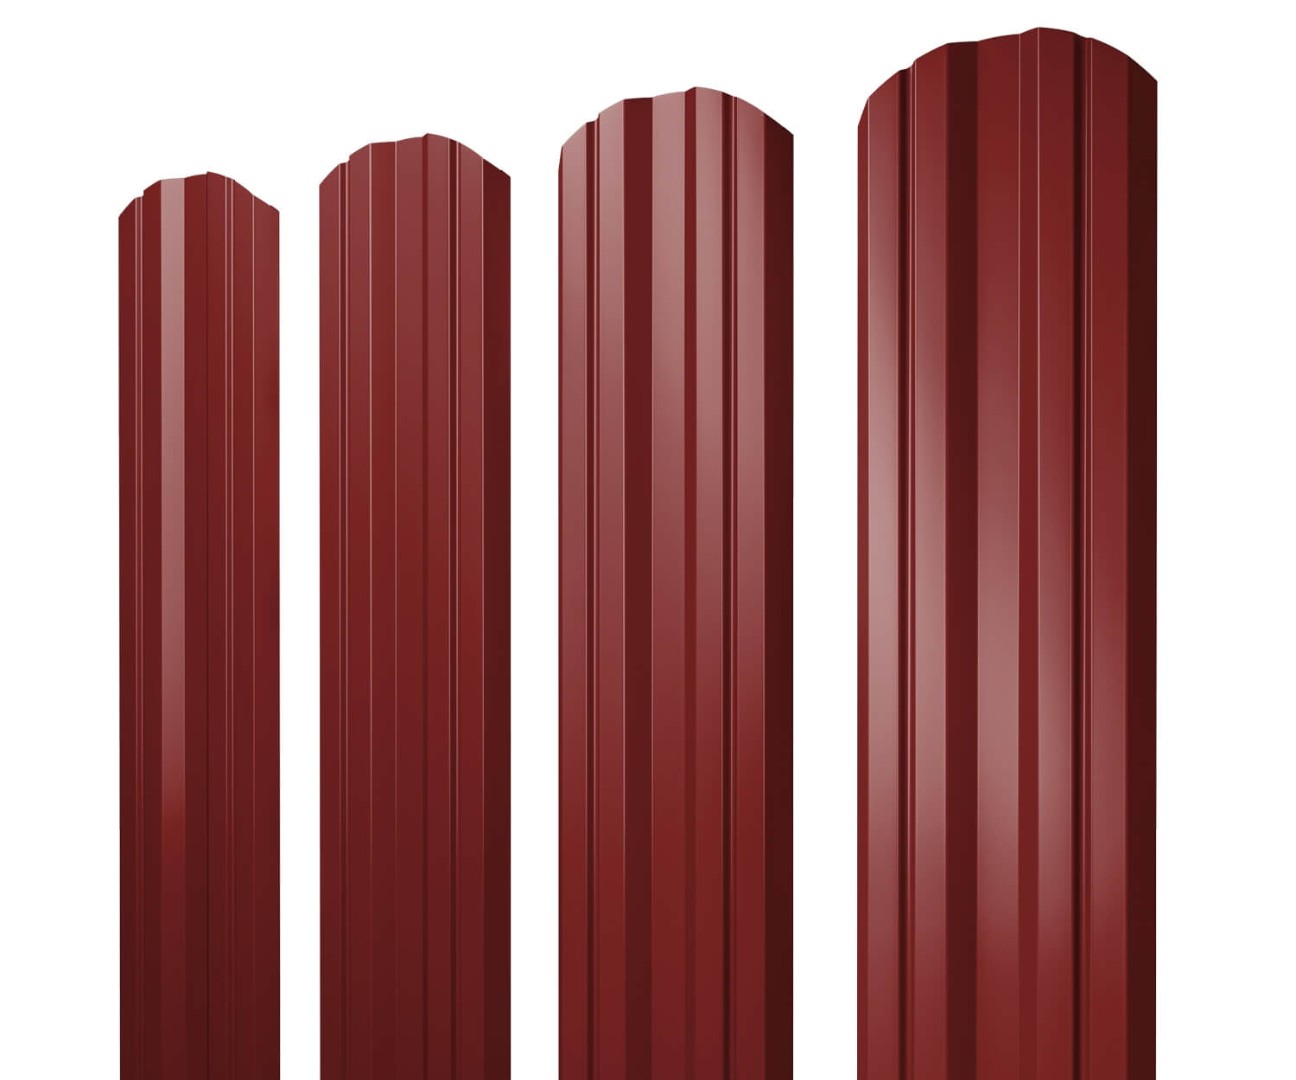 Штакетник Twin фигурный 0,5 Satin RAL 3011 коричнево-красный